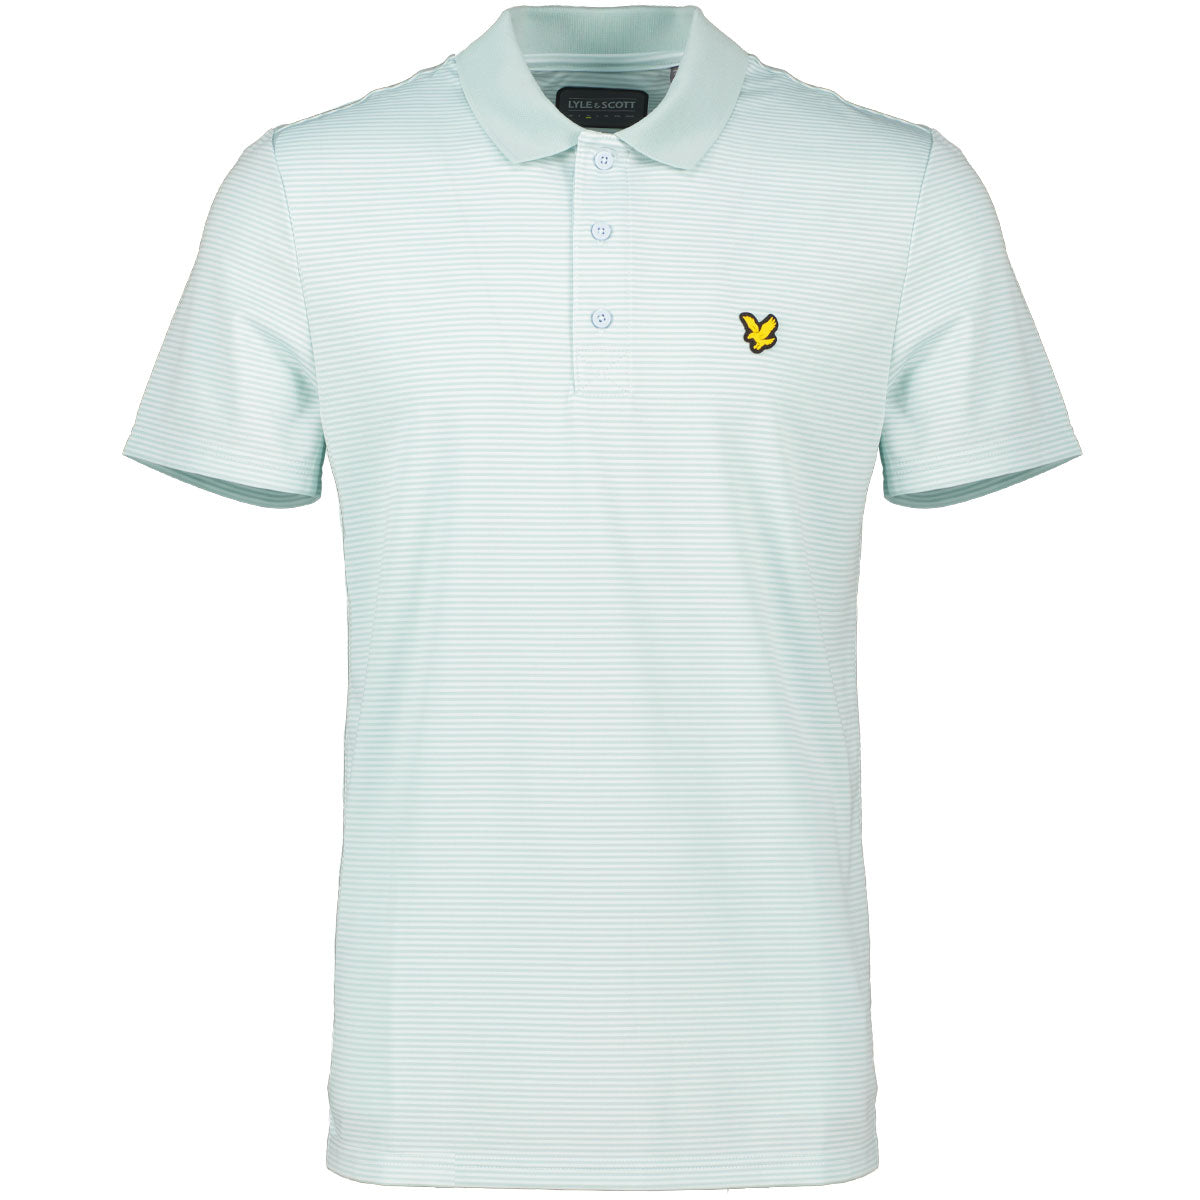 Lyle & Scott Microstripe Golf Polo Shirt SP1464GC